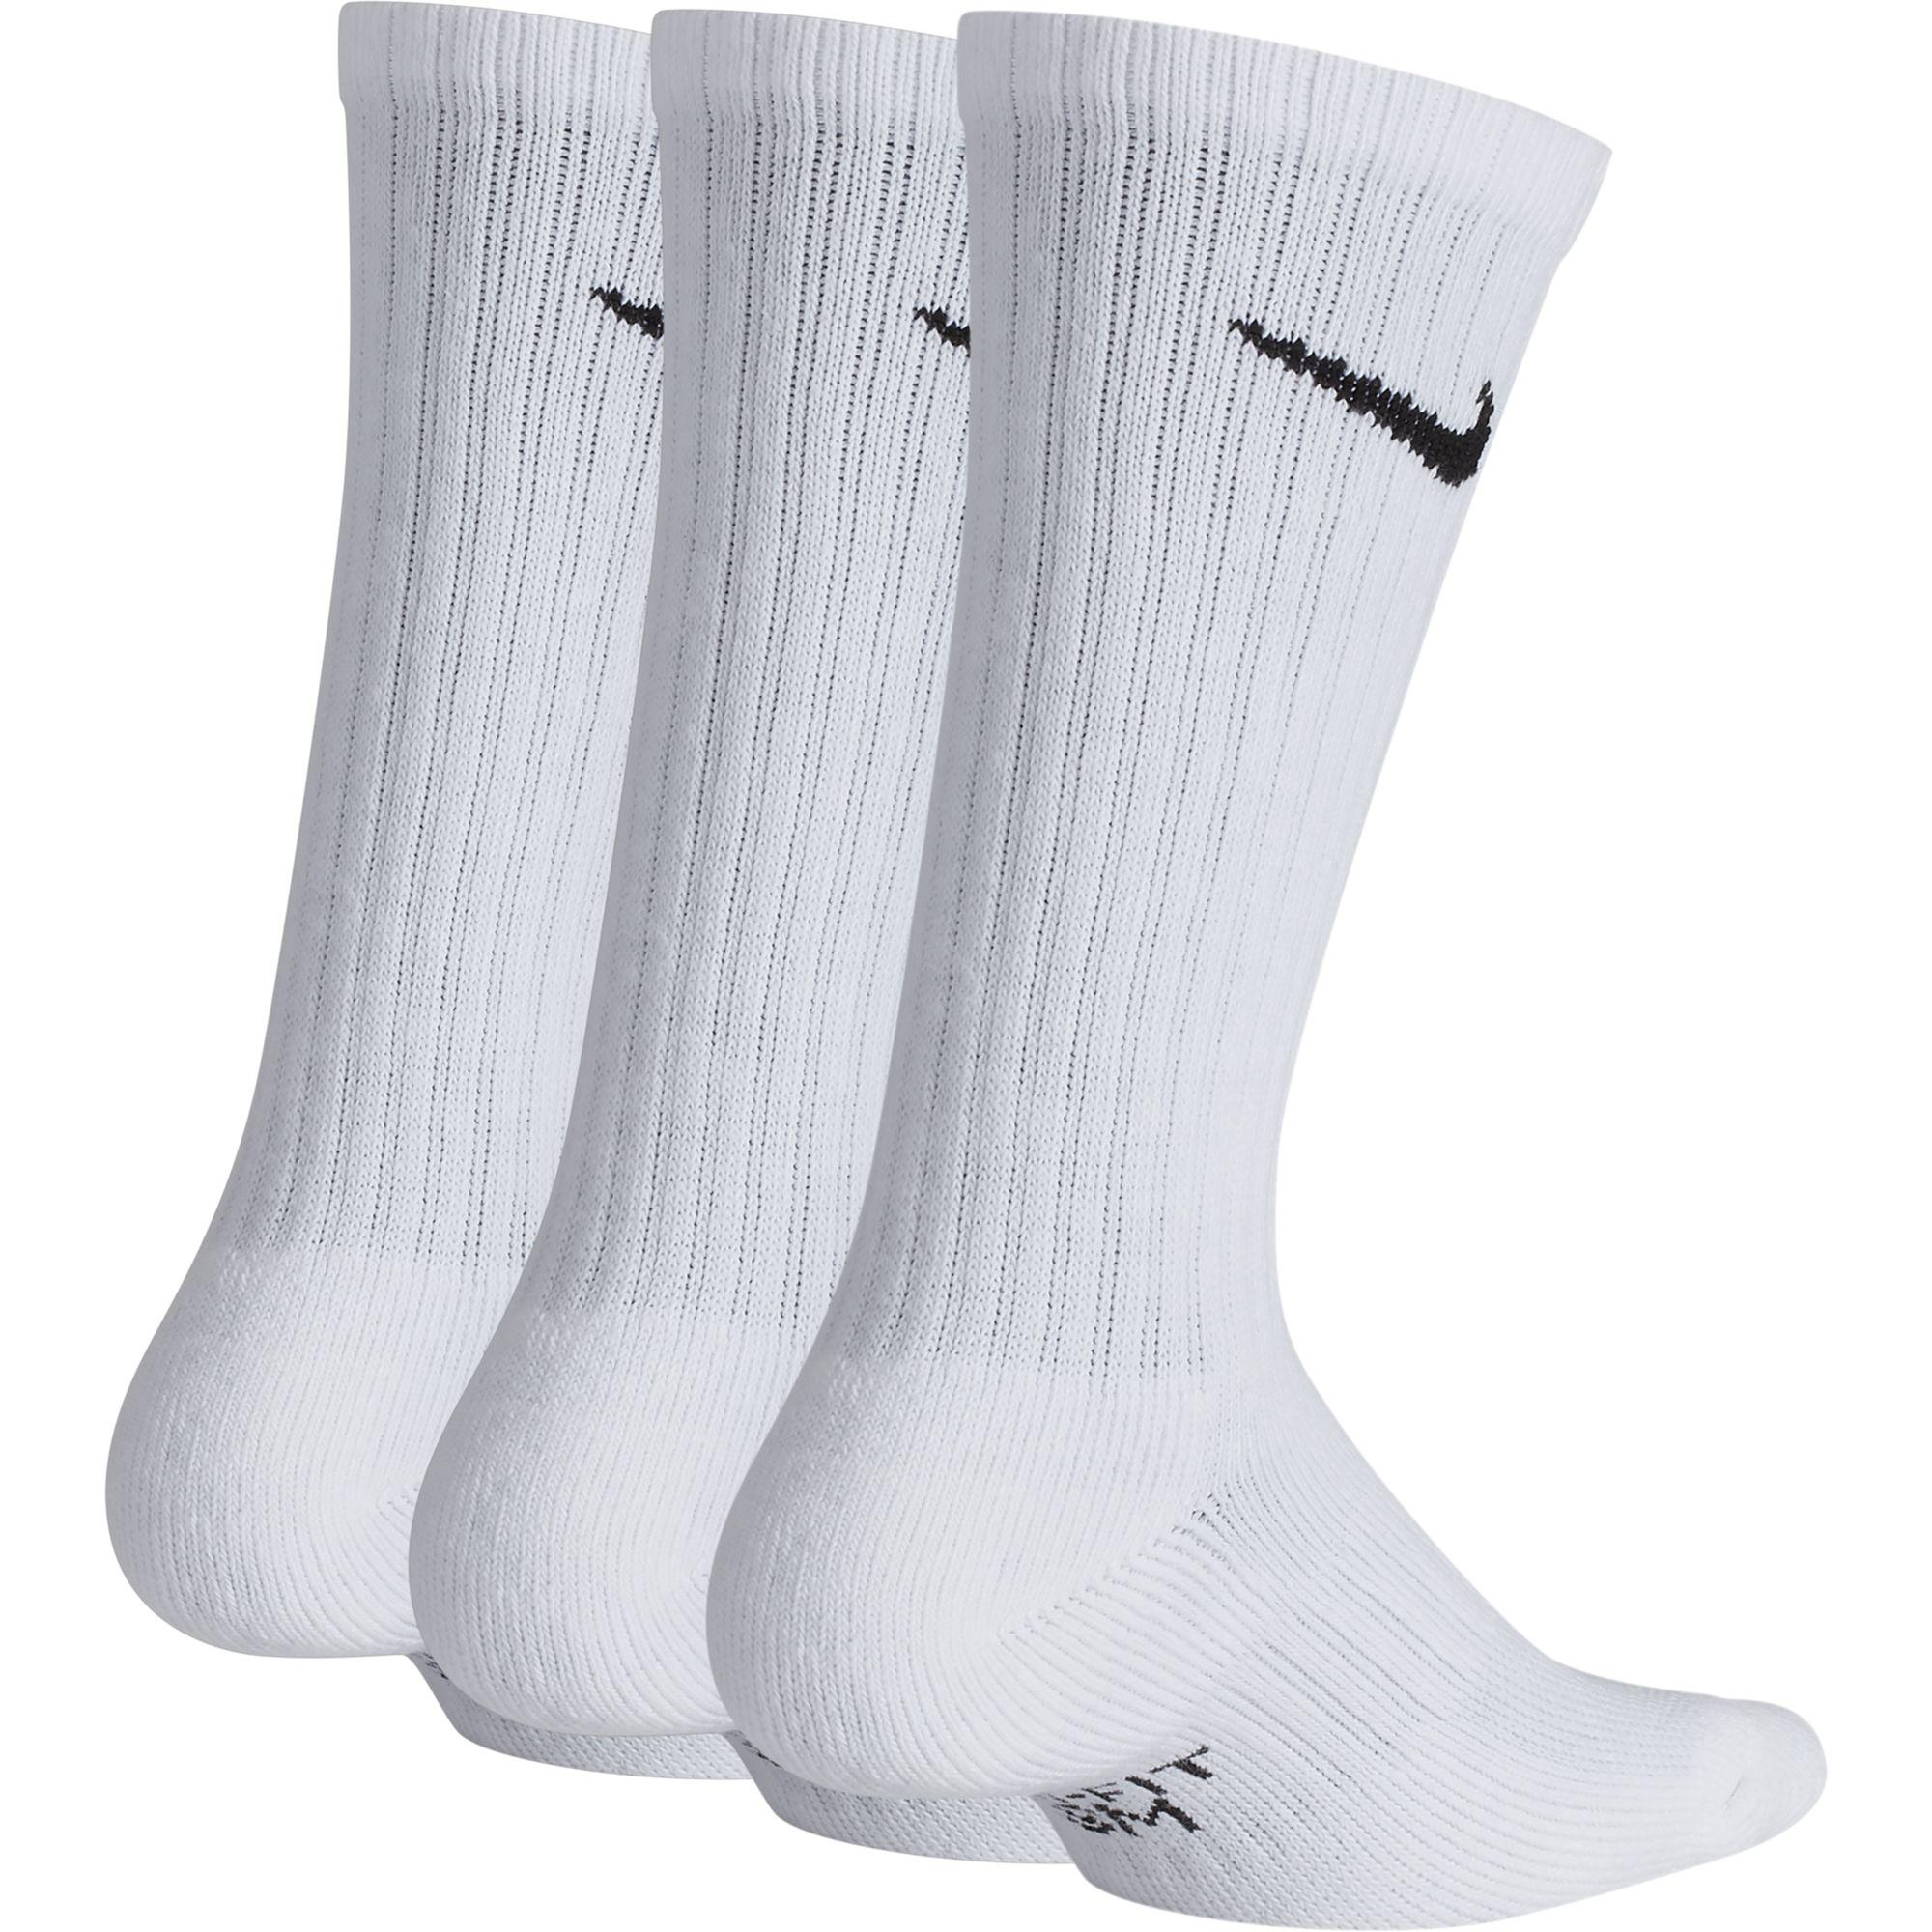 Nike Kids Performance Cushioned Crew Training Socks (3 Pairs) - White ...